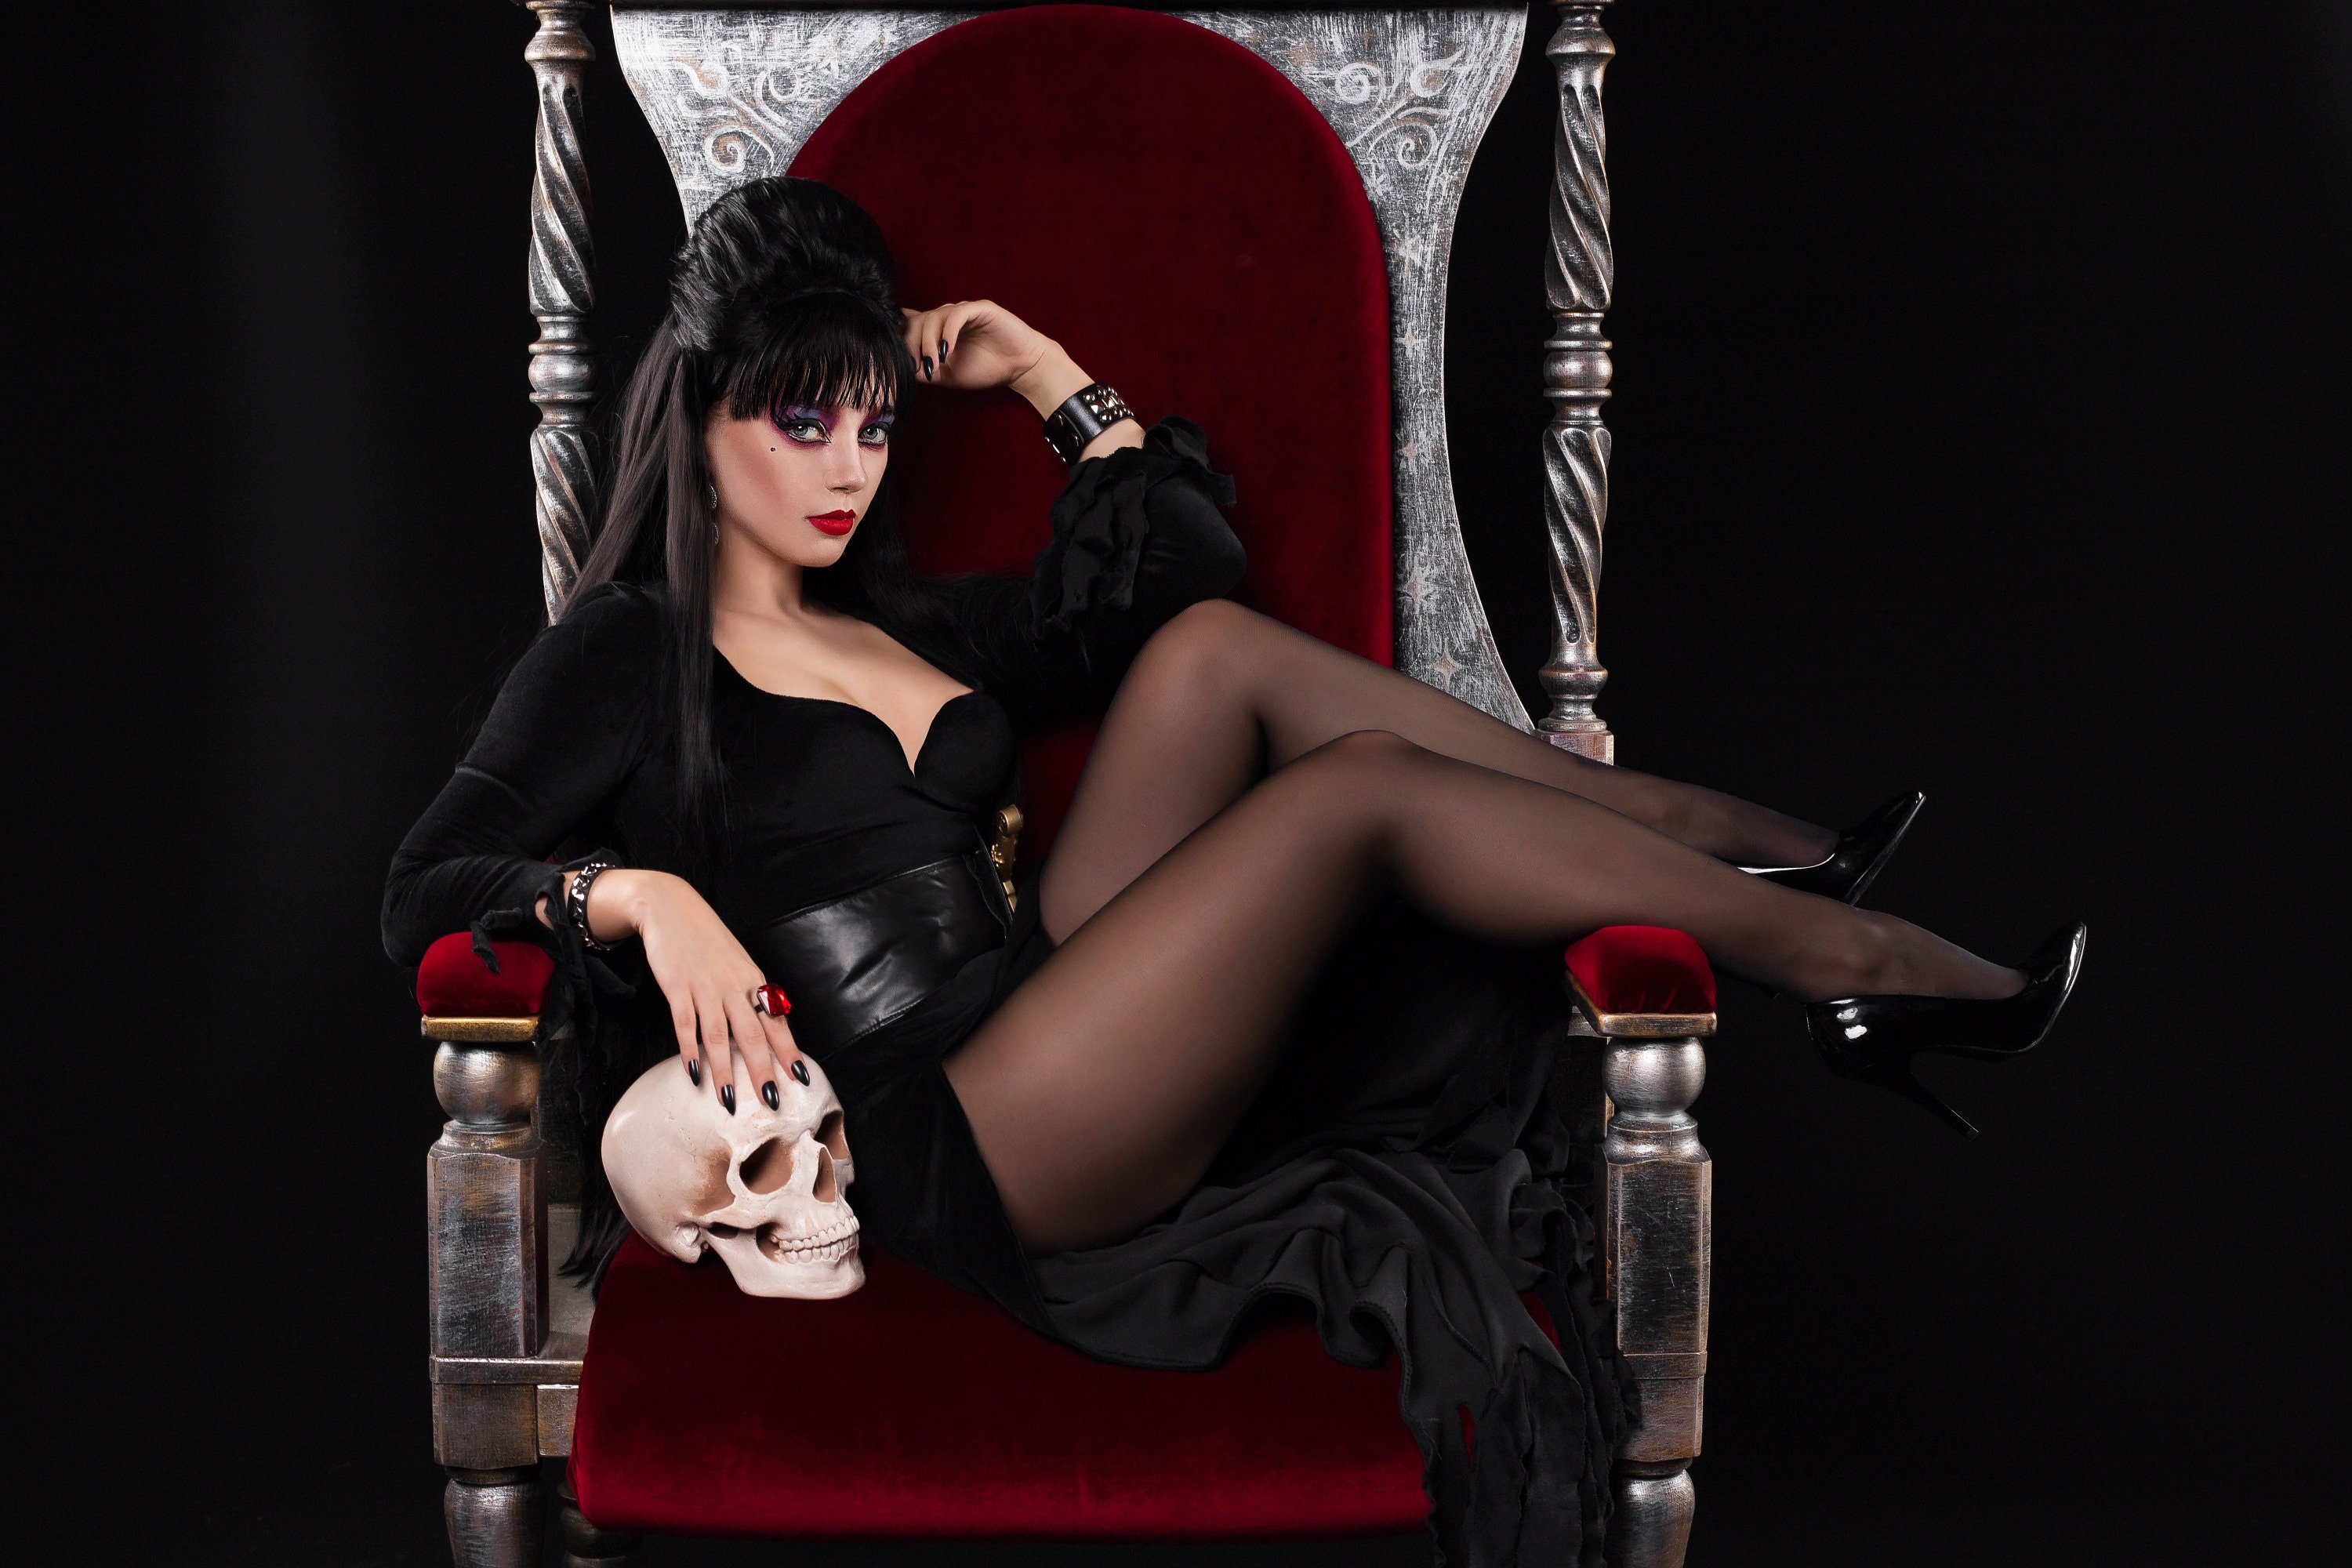 Déguisement adulte sexy Elvira : Vente de déguisements Accueil et